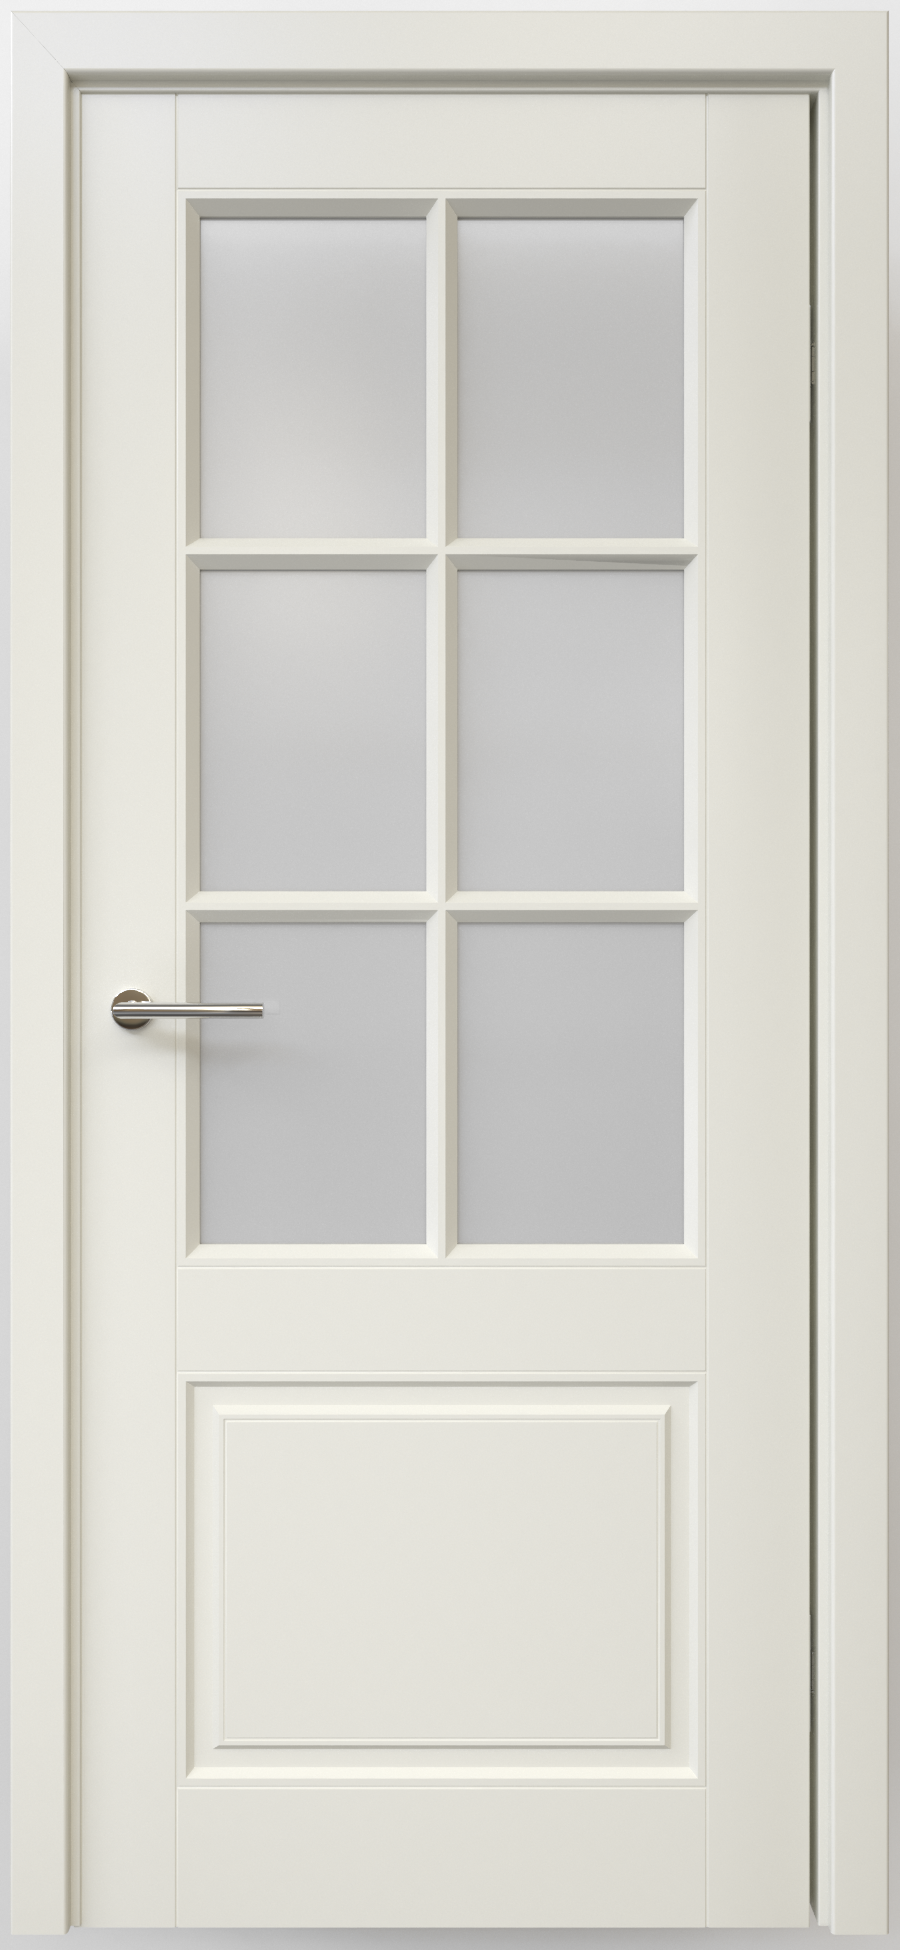 Полотно дверное остекленное Эмаль Классика-4 ПРАВОЕ 700 латте стекло мателюкс (защелка маг.)